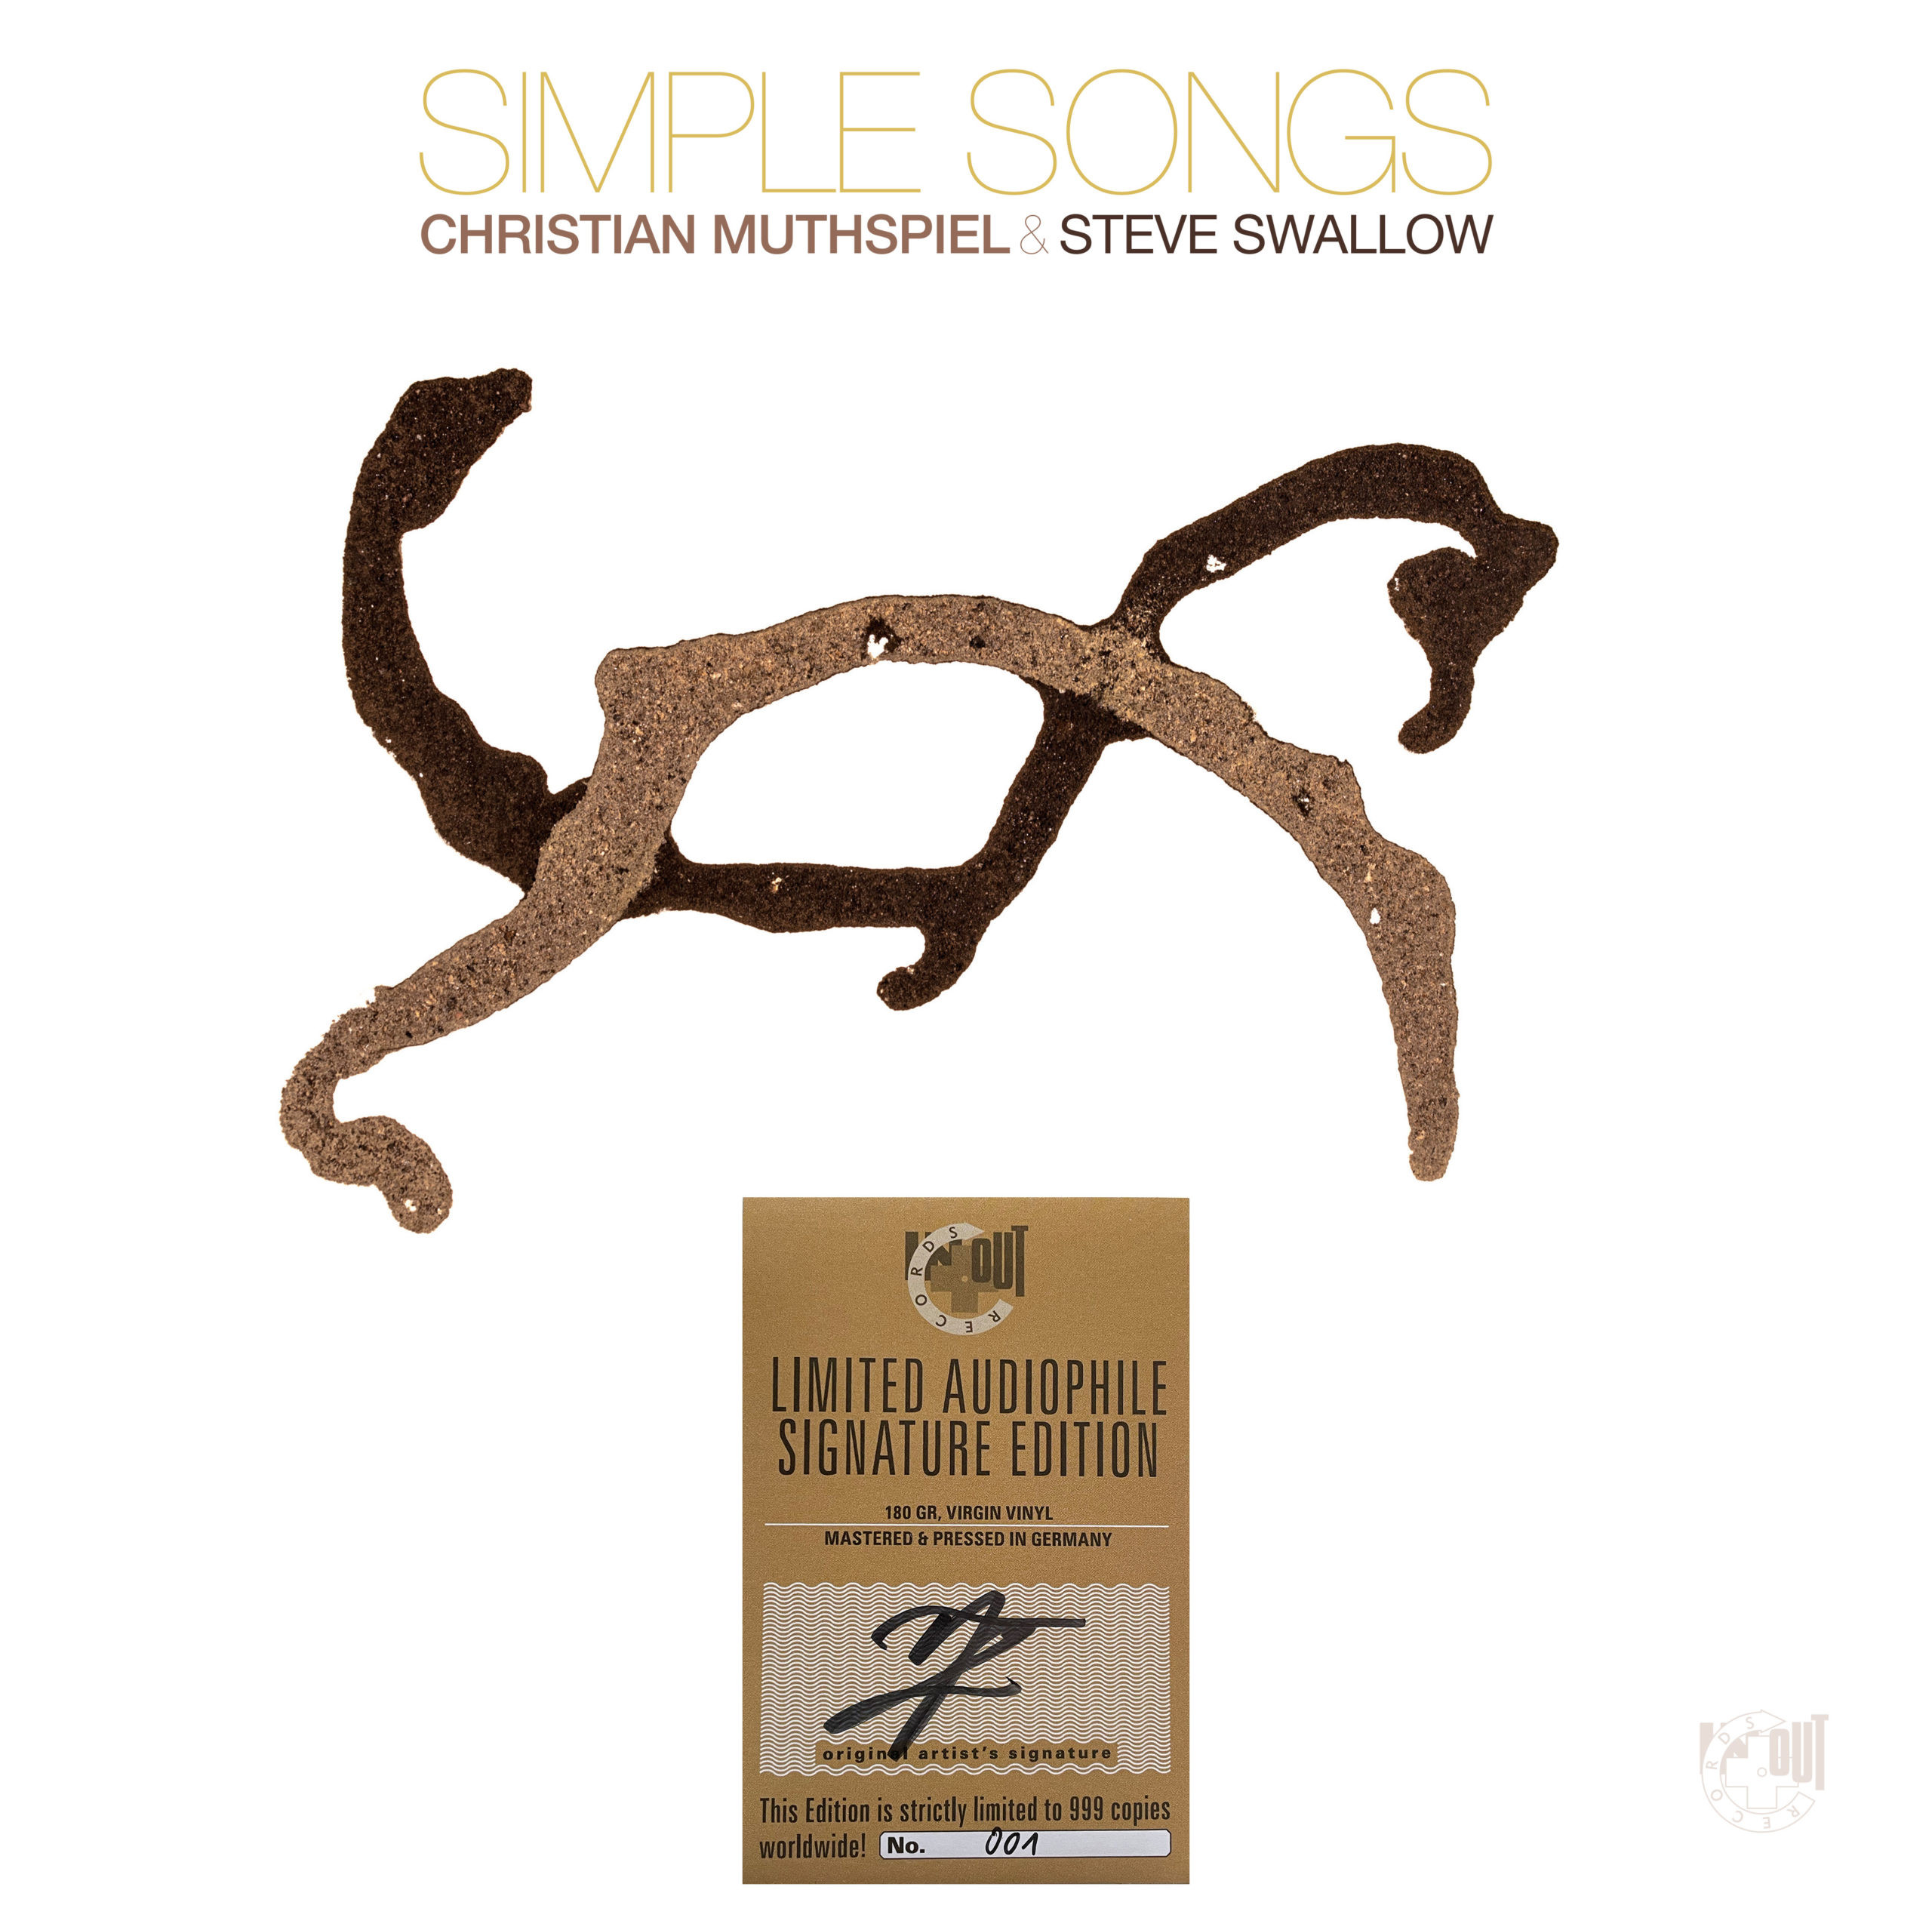 Christian Muthspiel & Steve Swallow - SIMPLE SONGS